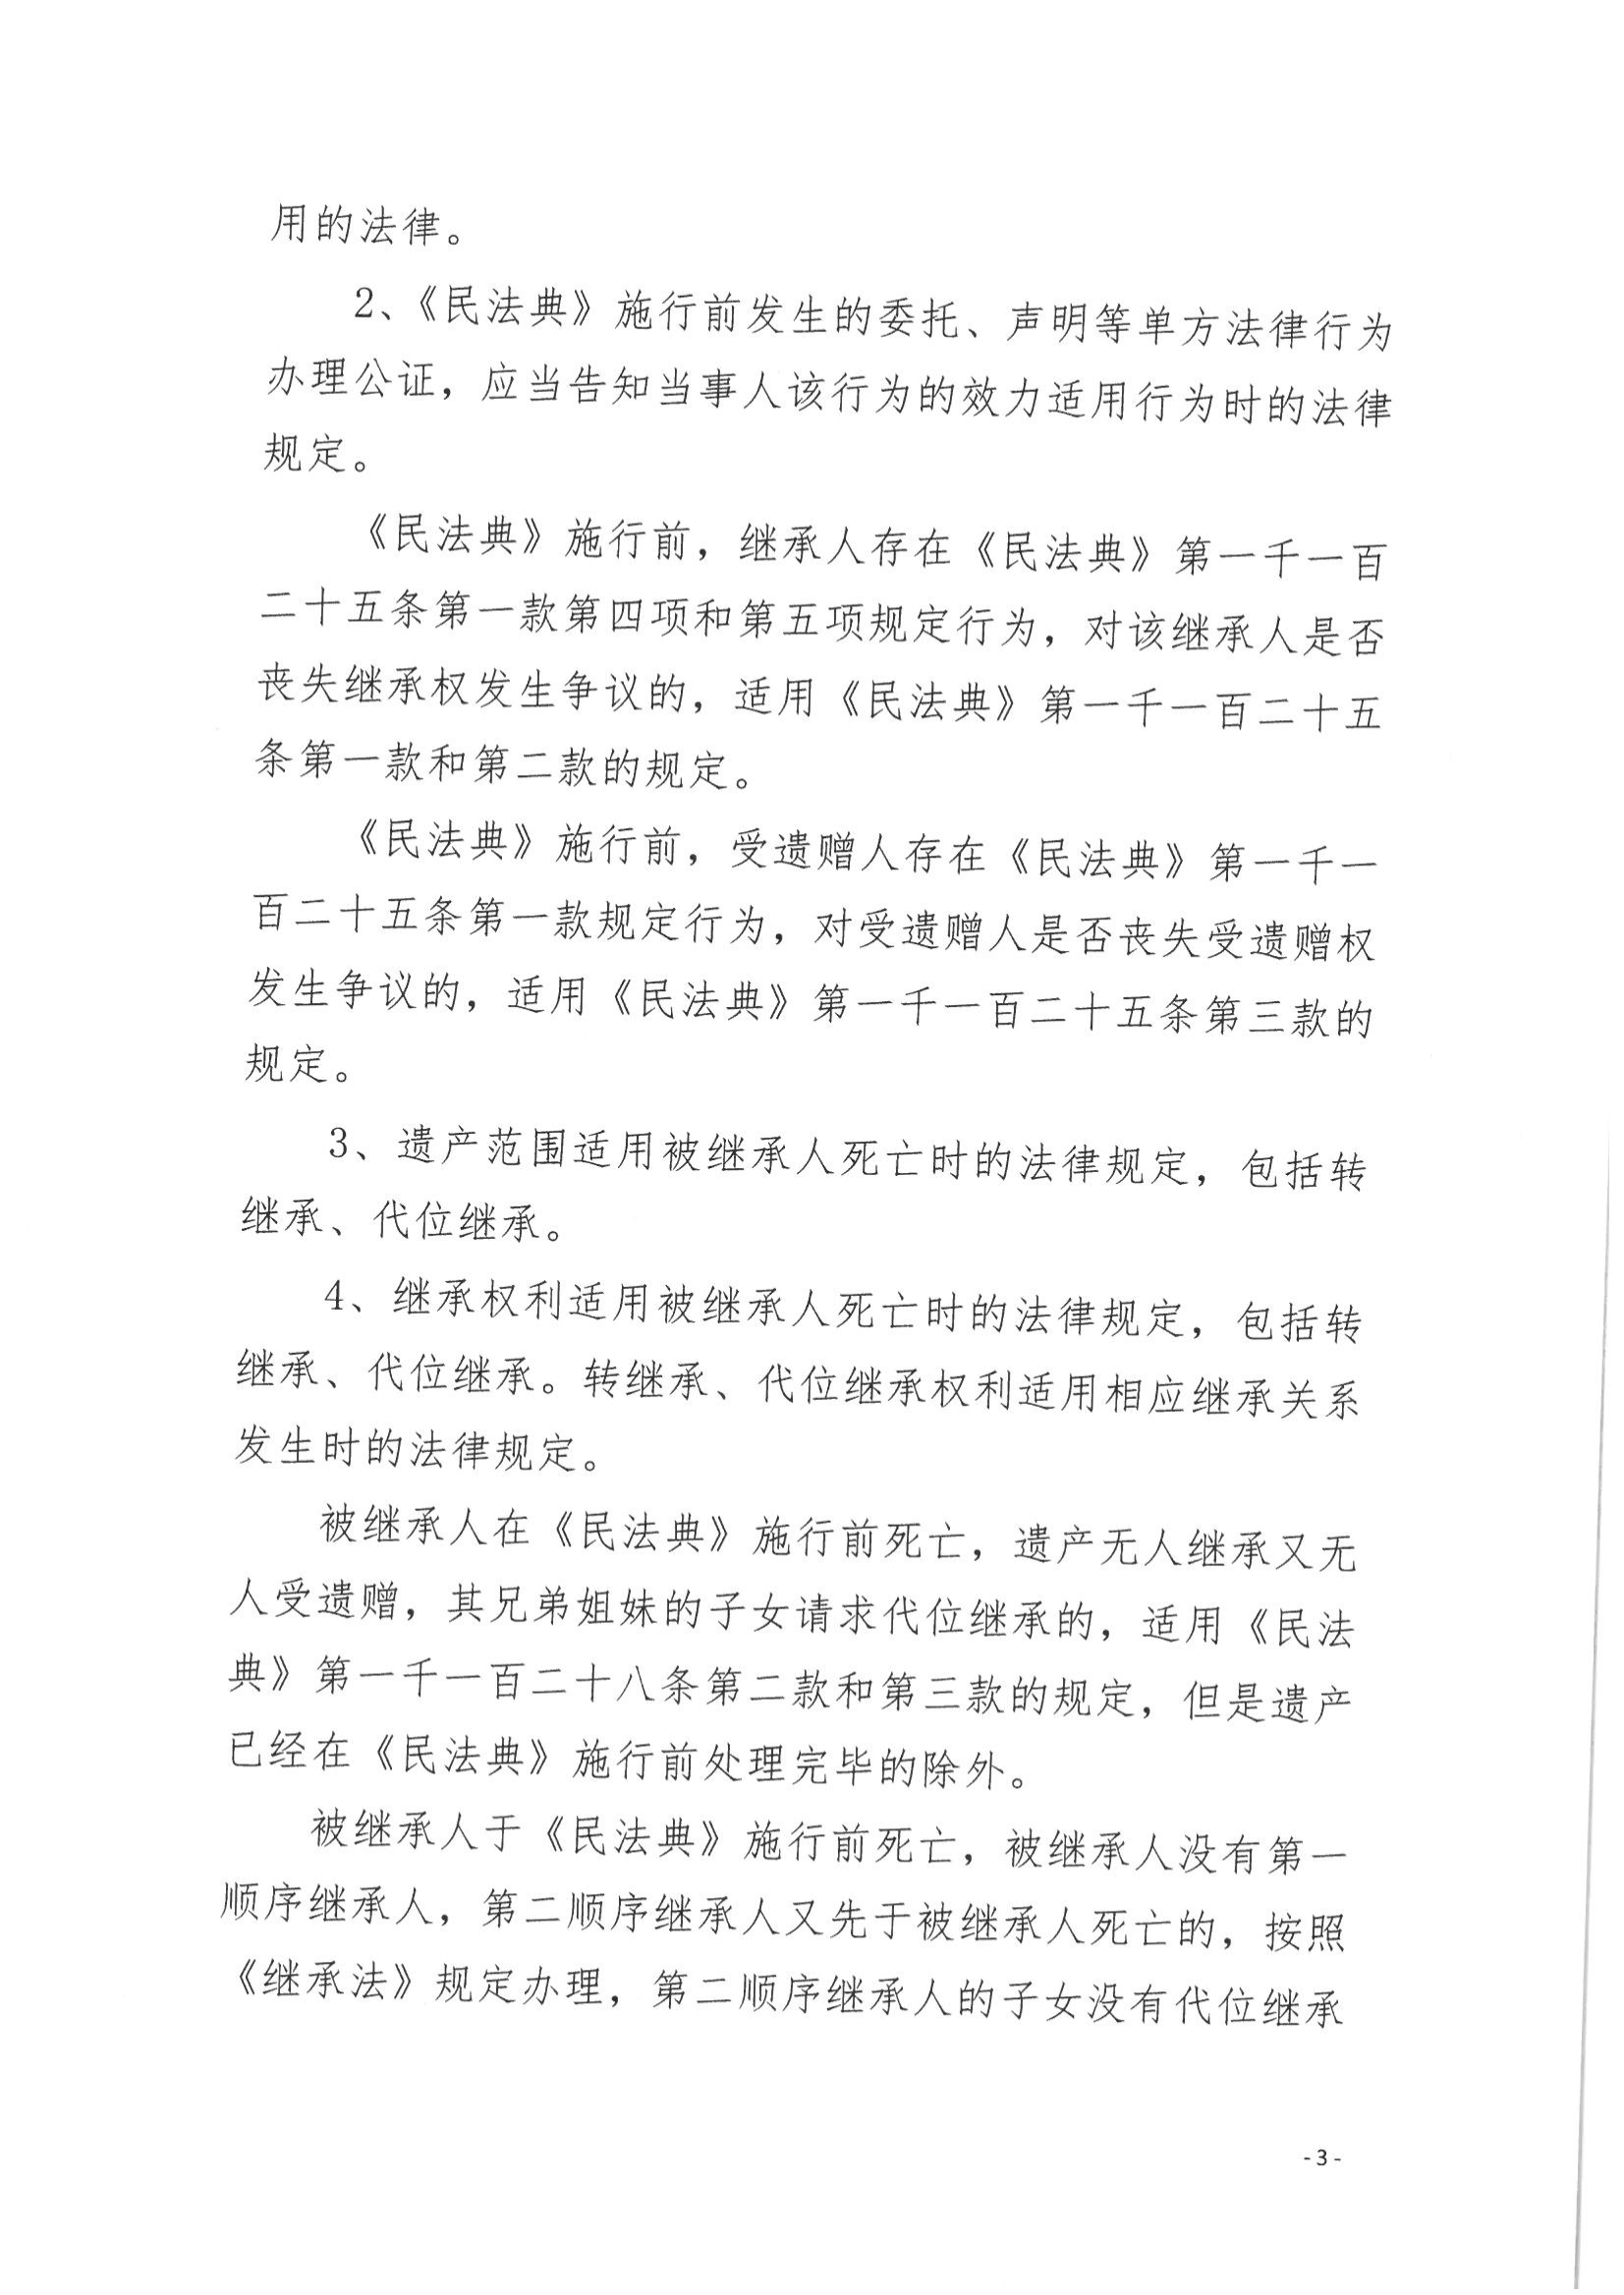 京公协字【2021】14号 《北京市公证协会规范执业指引【第12号】》_03